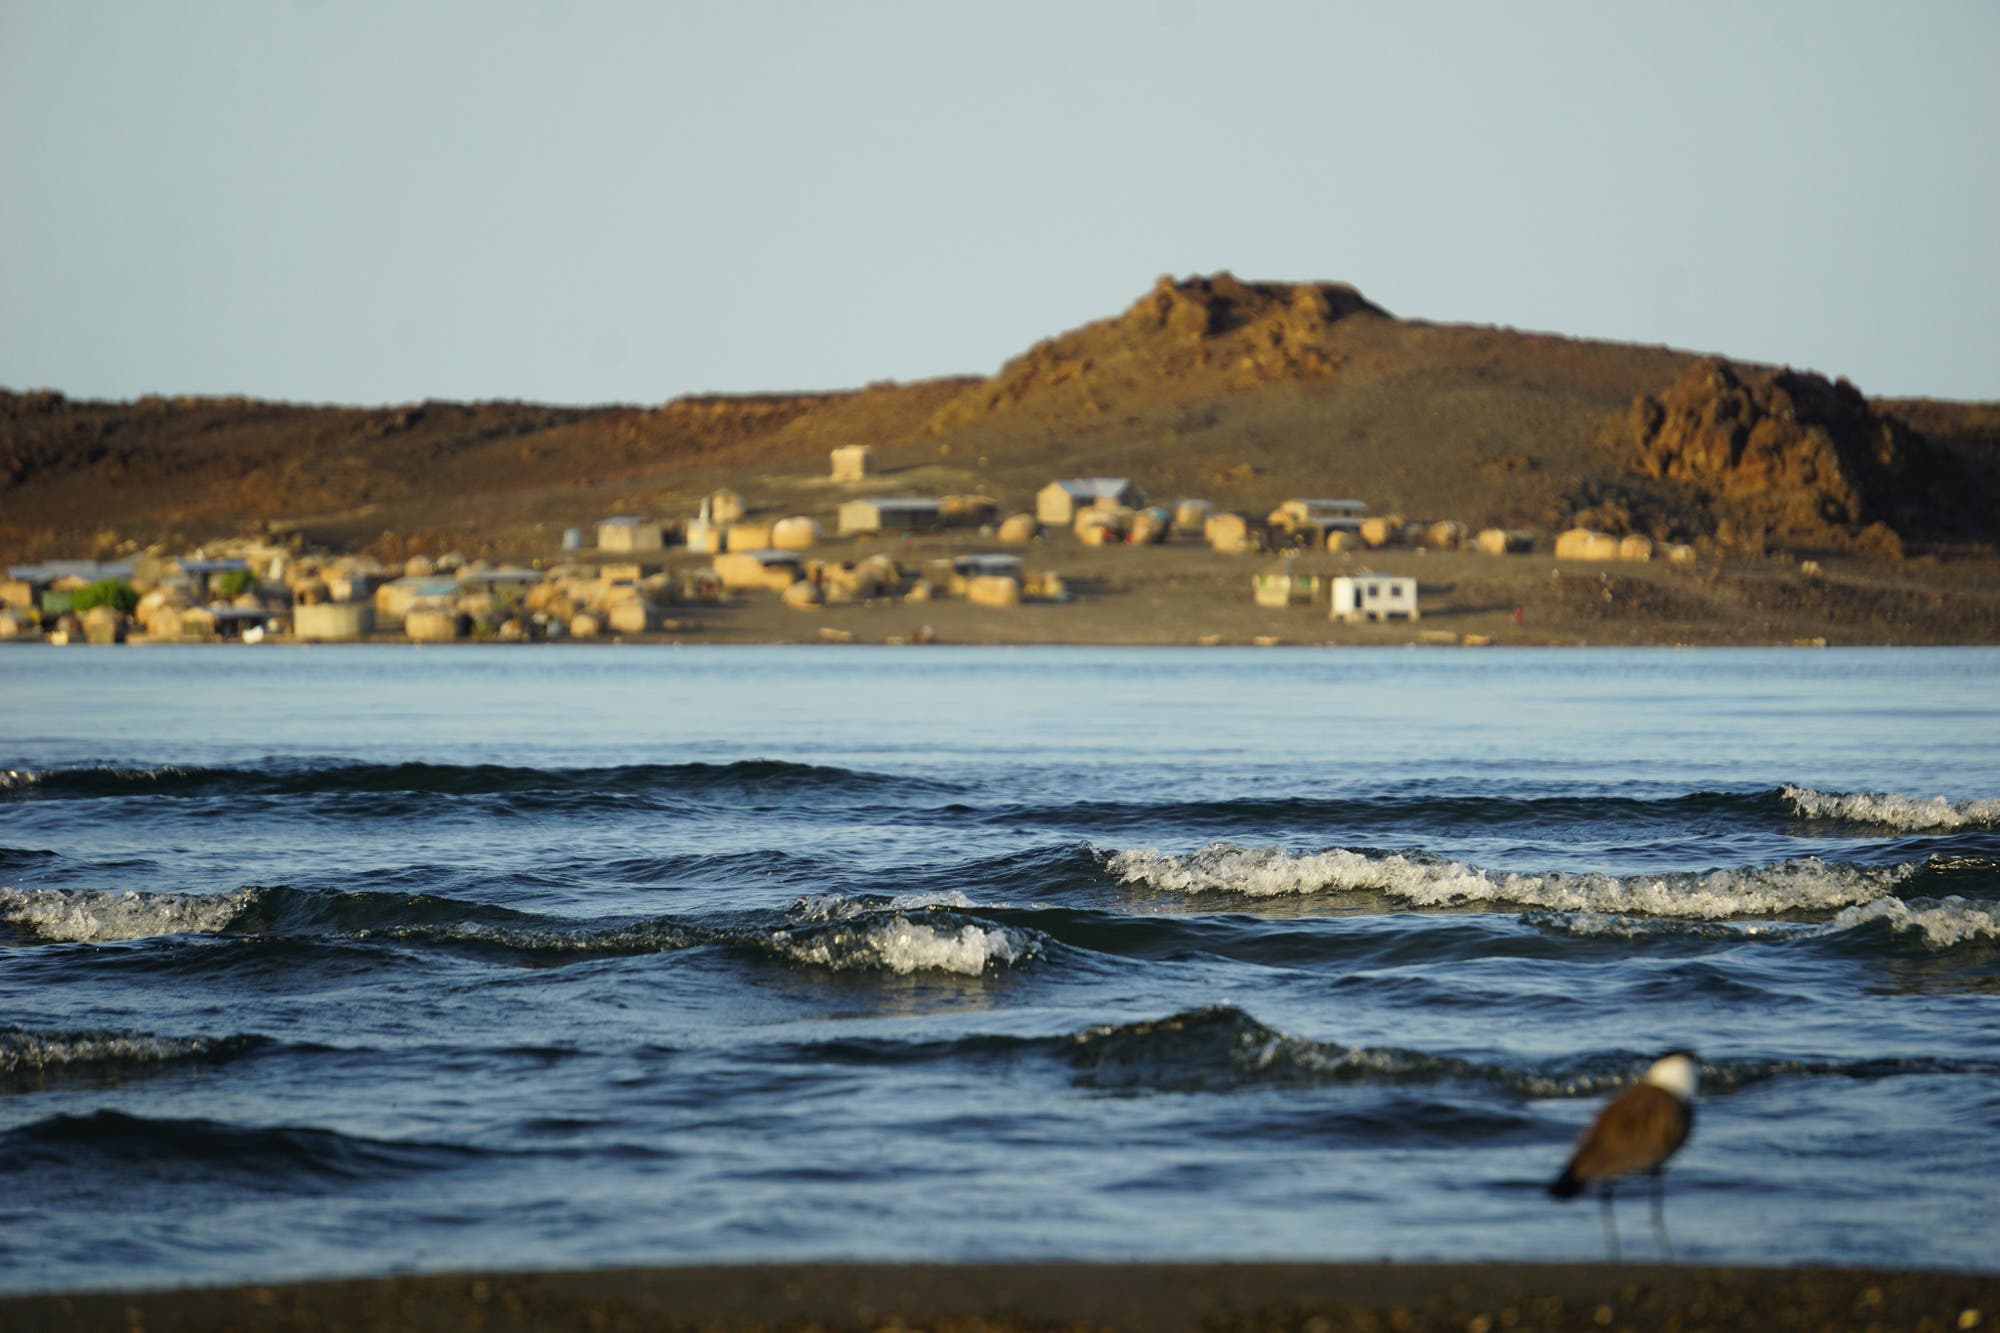 Der Turkanasee schlägt leichte Wellen im Vordergrund des Bilds. Im Hintergrund sind Hütten der El Molo unscharf zu erkennen.